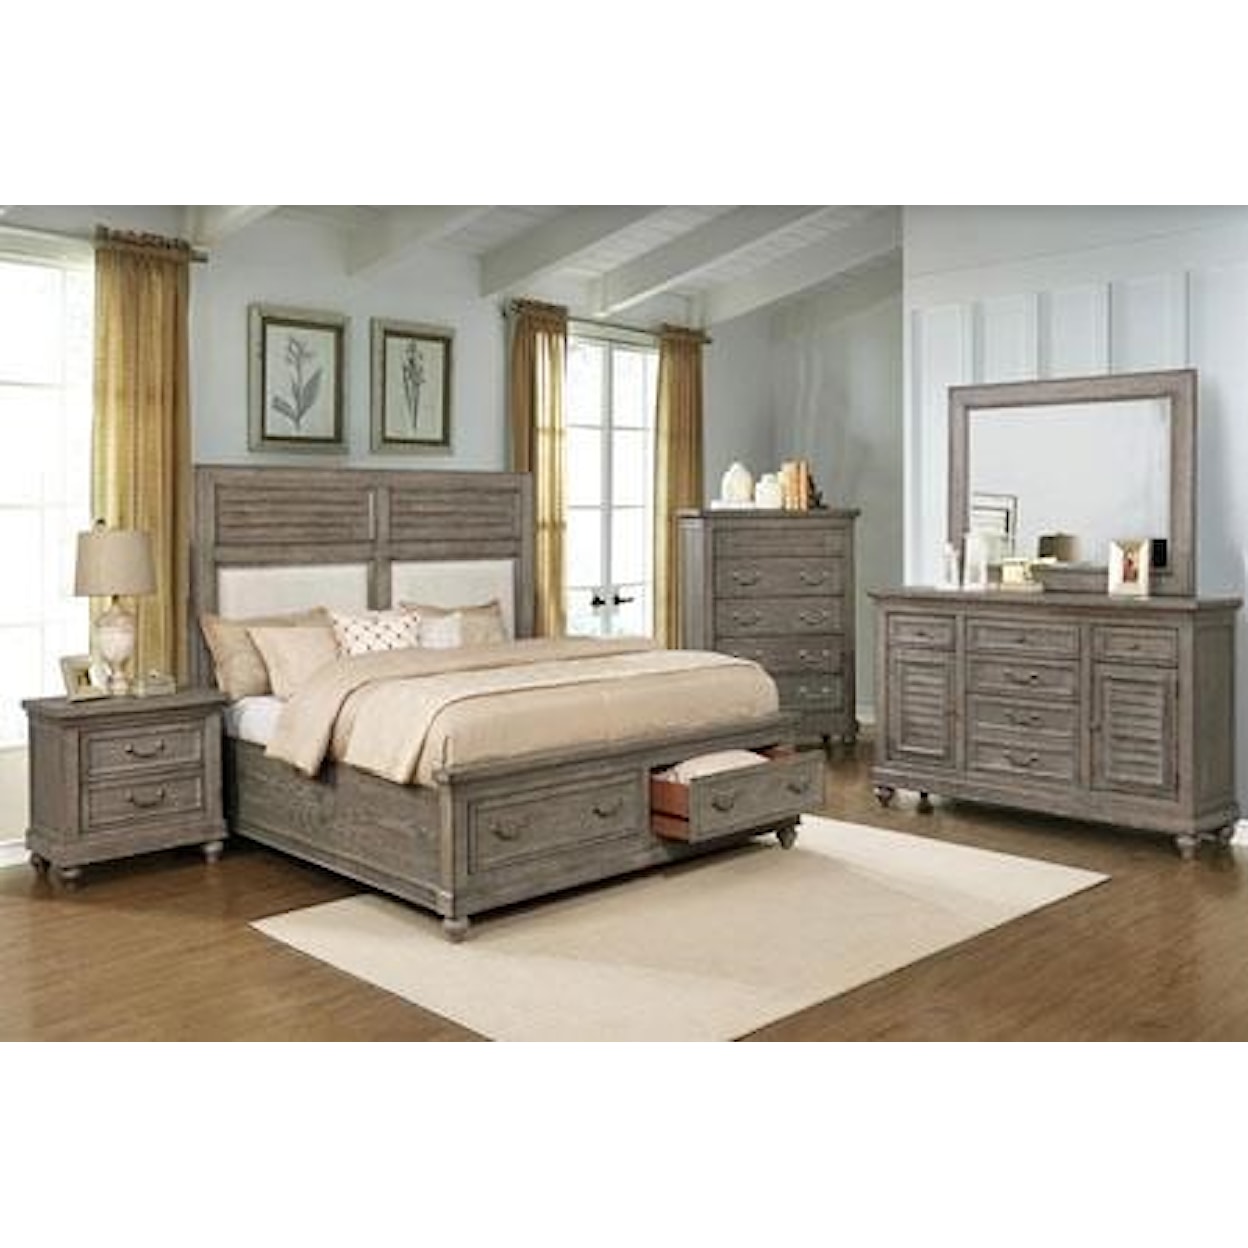 Avalon Furniture B0109 Queen Storage Bed